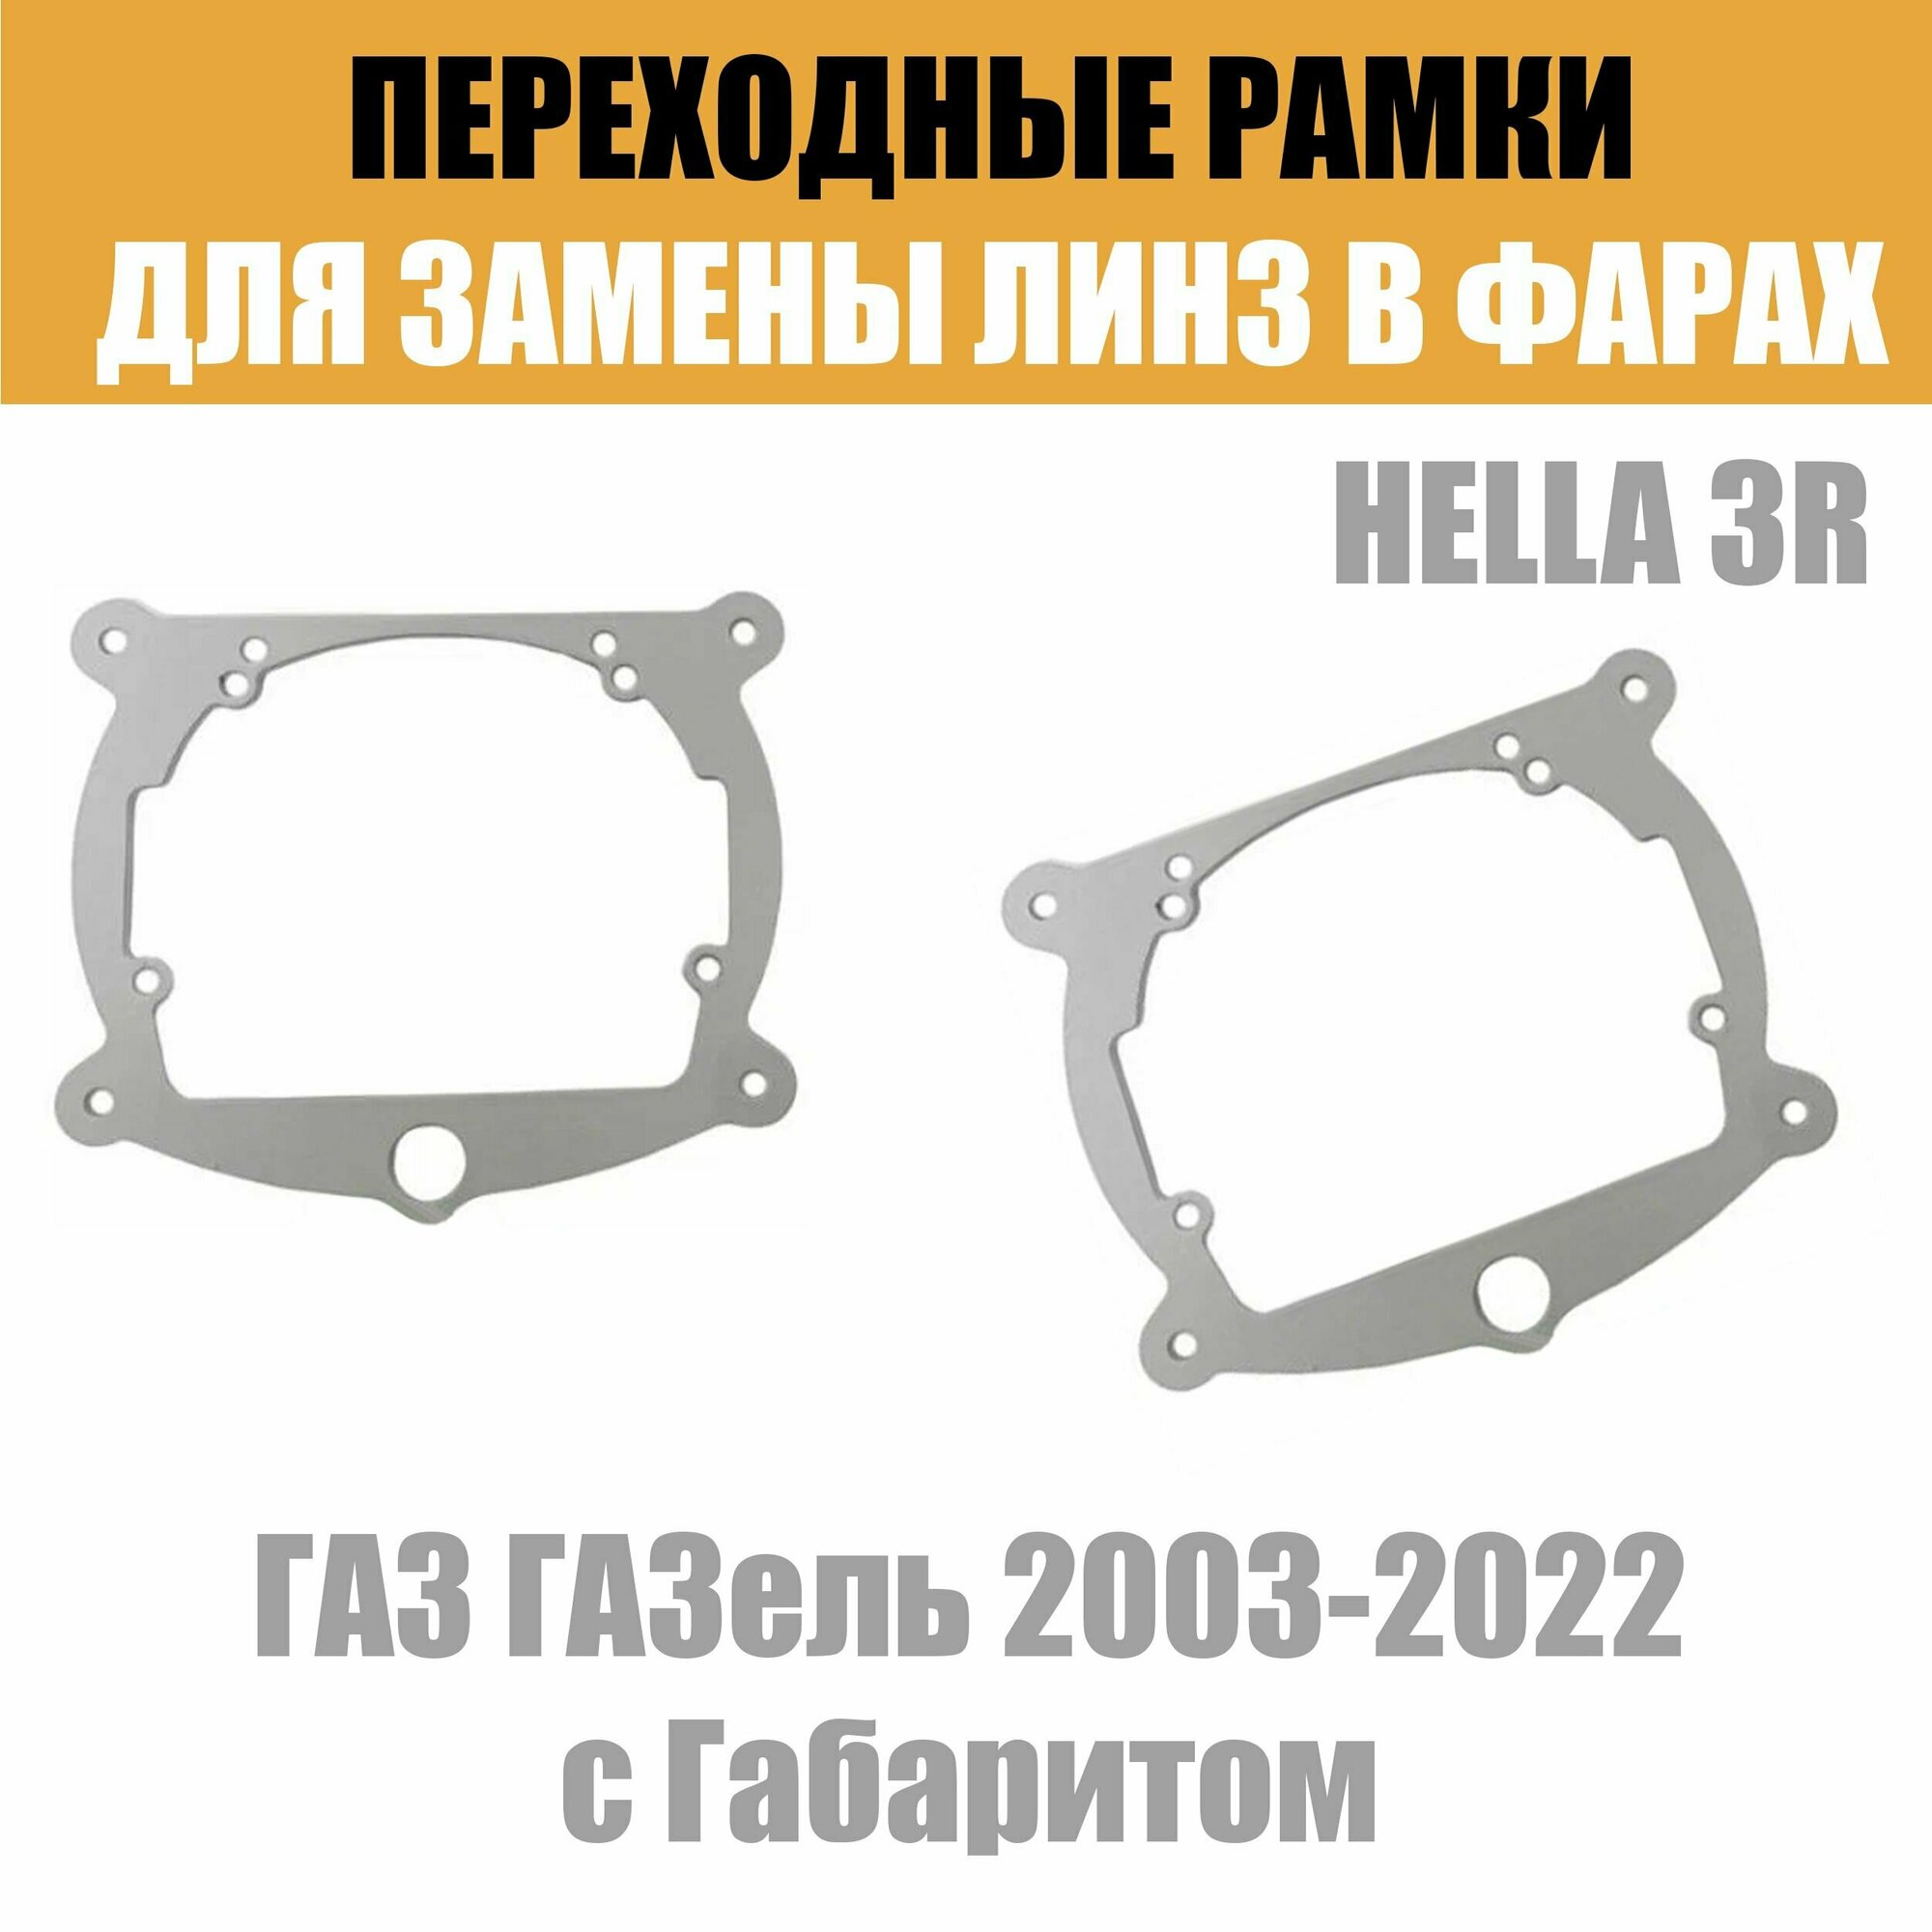 Переходные рамки для линз №8 на ГАЗ ГАЗель 2003-2022 с Габаритом под модуль Hella 3R/Hella 3 (Комплект 2шт)